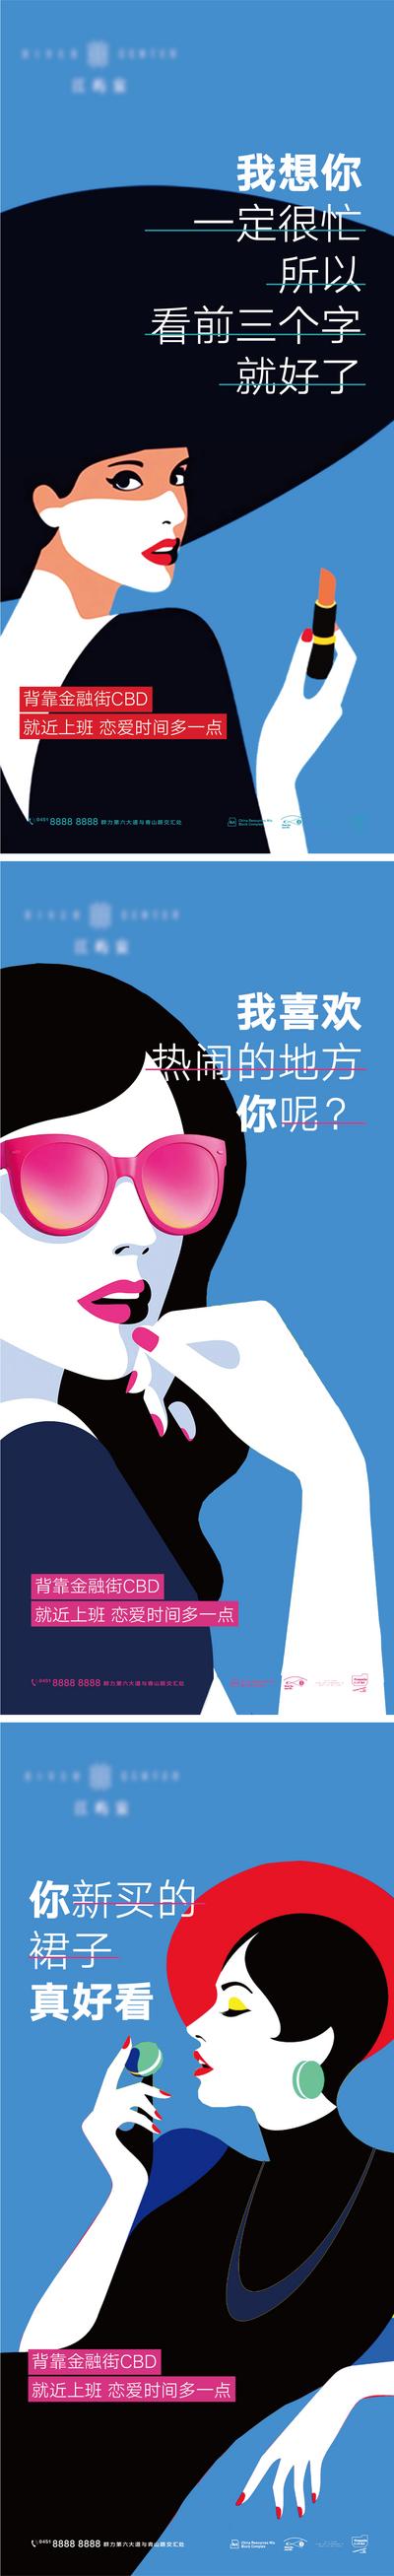 南门网 海报 房地产 公历节日 妇女节 女神节 女人 商业 插画 高级 波普 系列